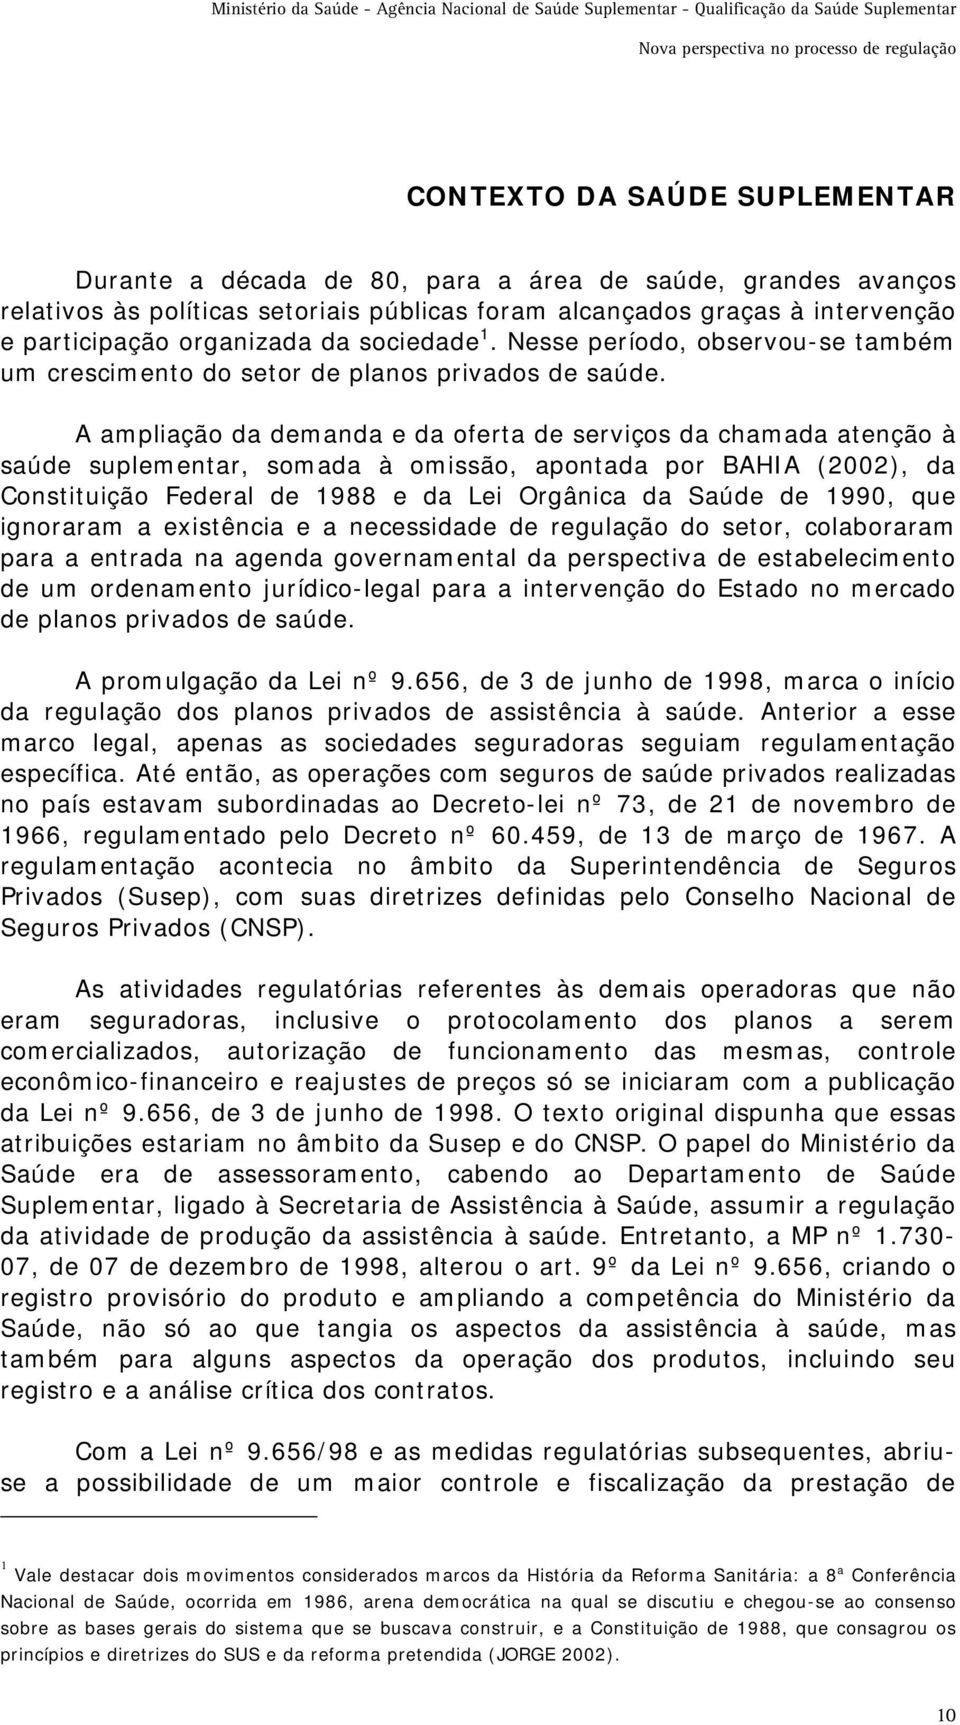 A ampliação da demanda e da oferta de serviços da chamada atenção à saúde suplementar, somada à omissão, apontada por BAHIA (2002), da Constituição Federal de 1988 e da Lei Orgânica da Saúde de 1990,